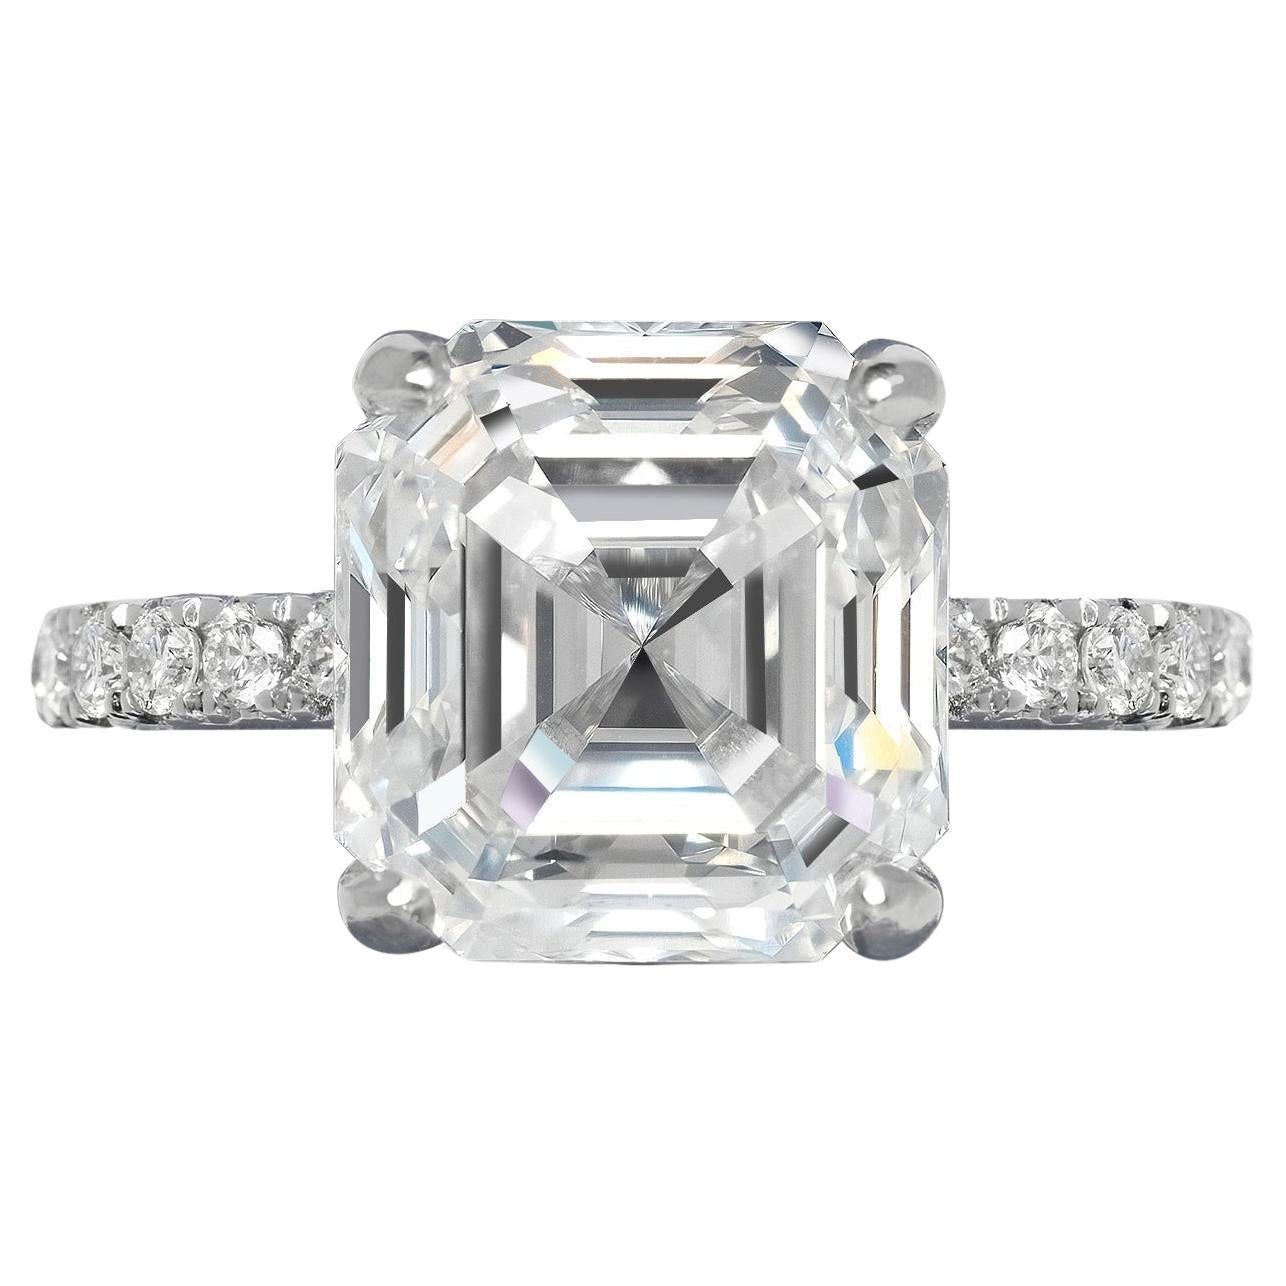 7 Carat Asscher Cut Diamond Engagement Ring GIA Certified G VVS1 For Sale